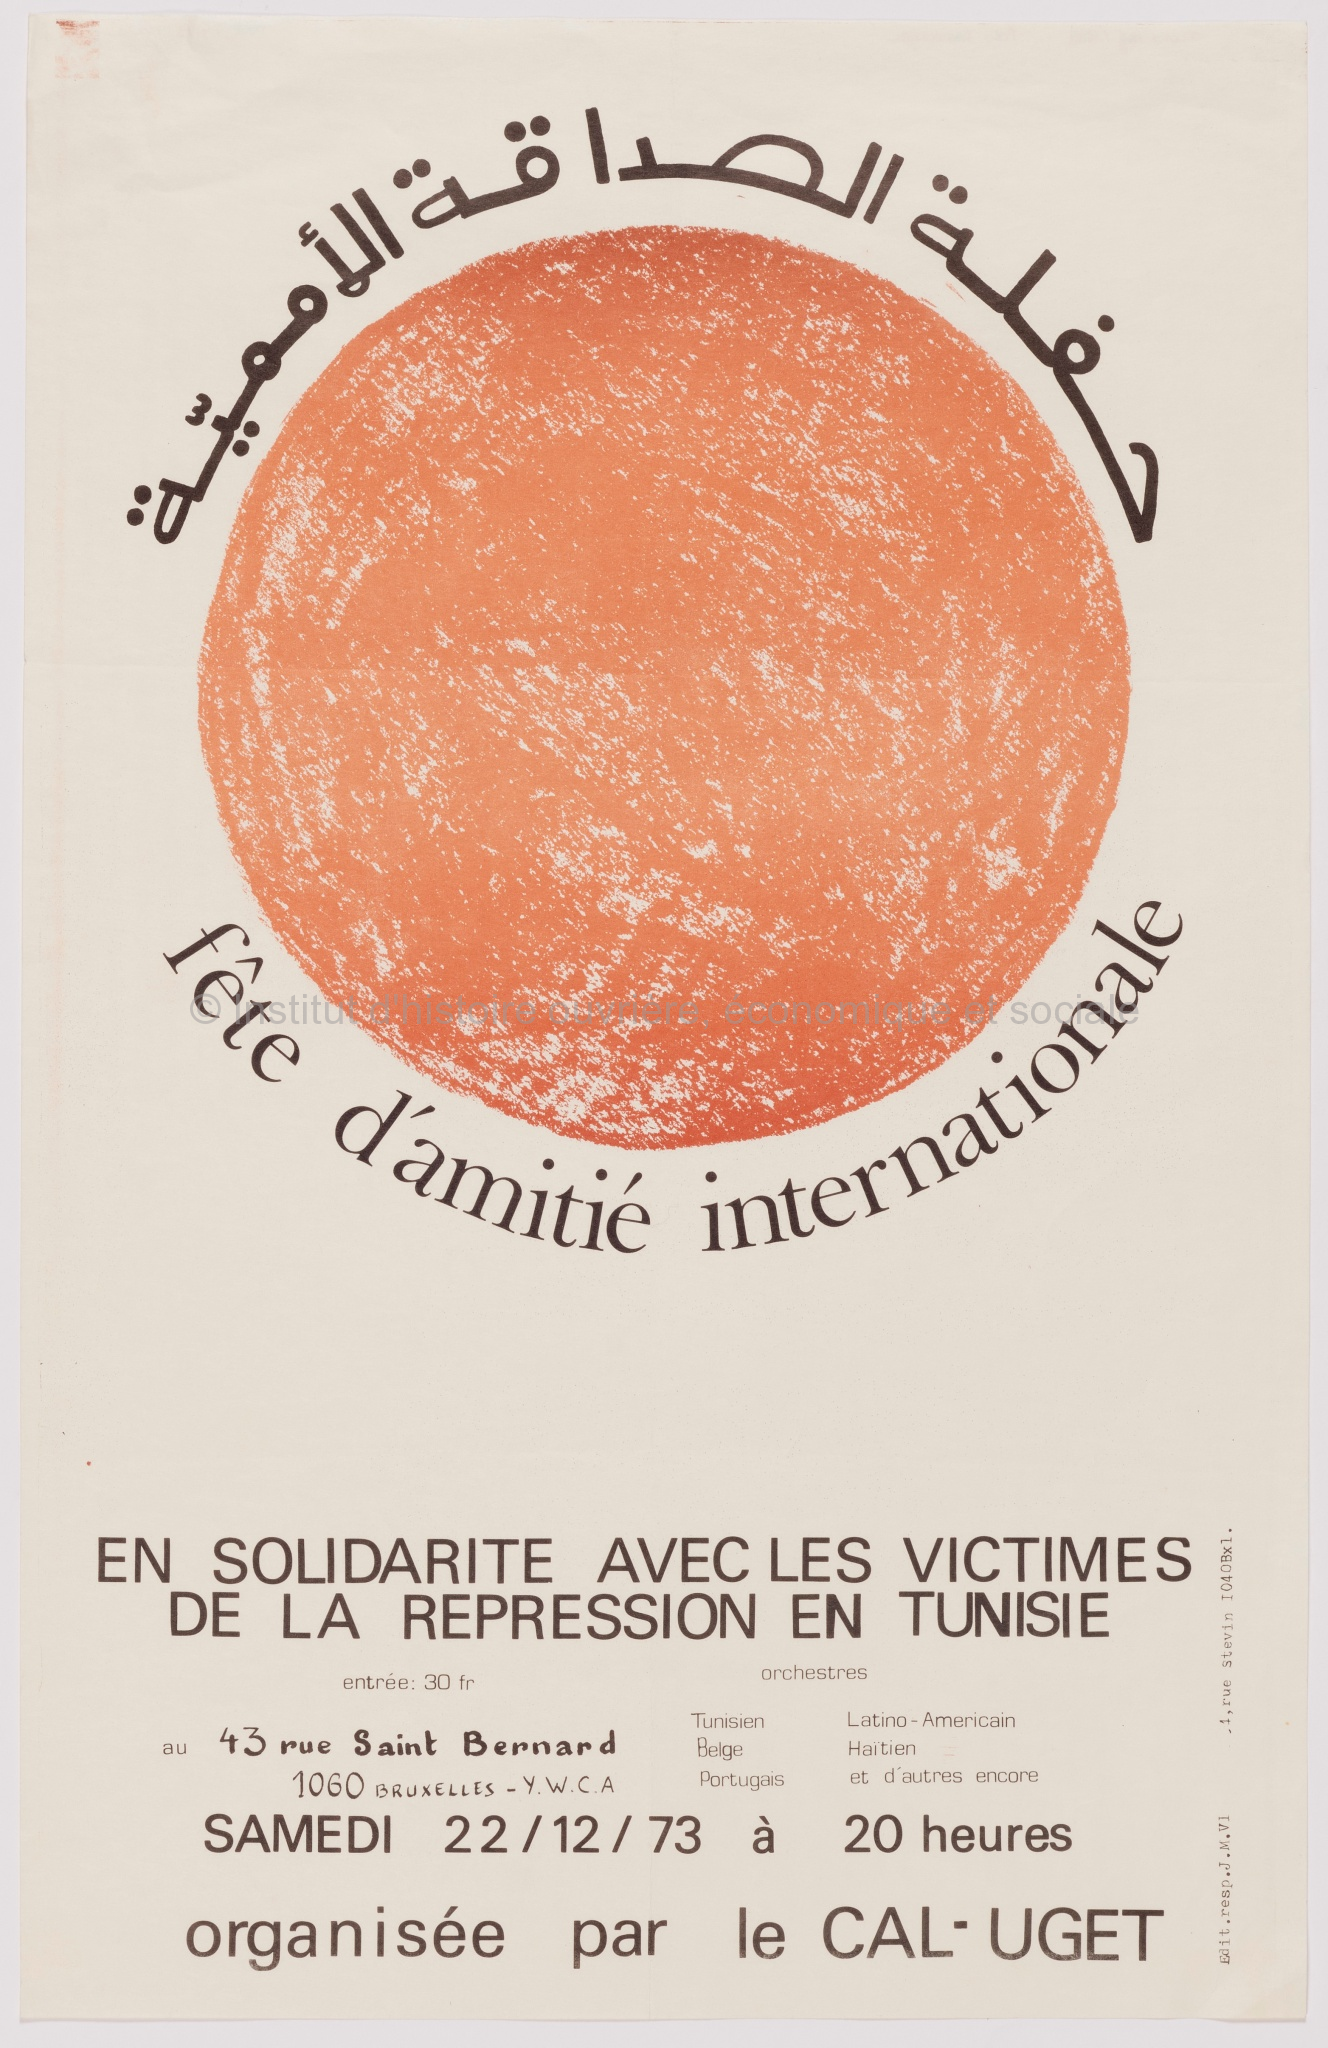 Fête d'amitié internationale en solidarité avec les victimes de la répression en Tunisie... samedi 22/12/73 à 20 heures organisée parle CAL-UGET